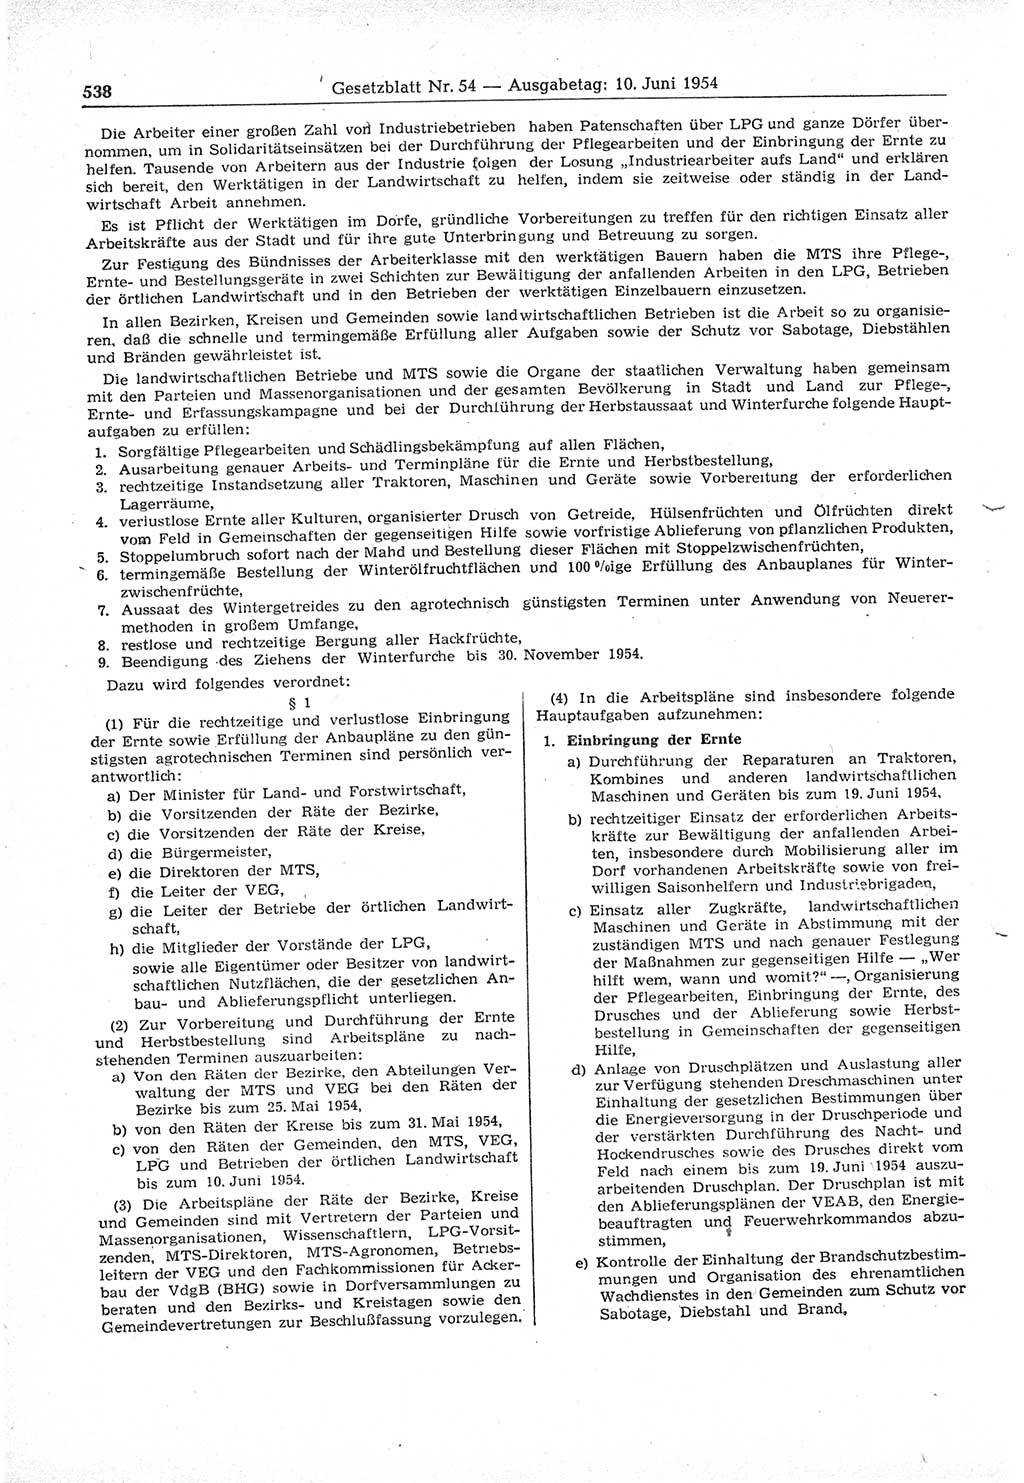 Gesetzblatt (GBl.) der Deutschen Demokratischen Republik (DDR) 1954, Seite 538 (GBl. DDR 1954, S. 538)